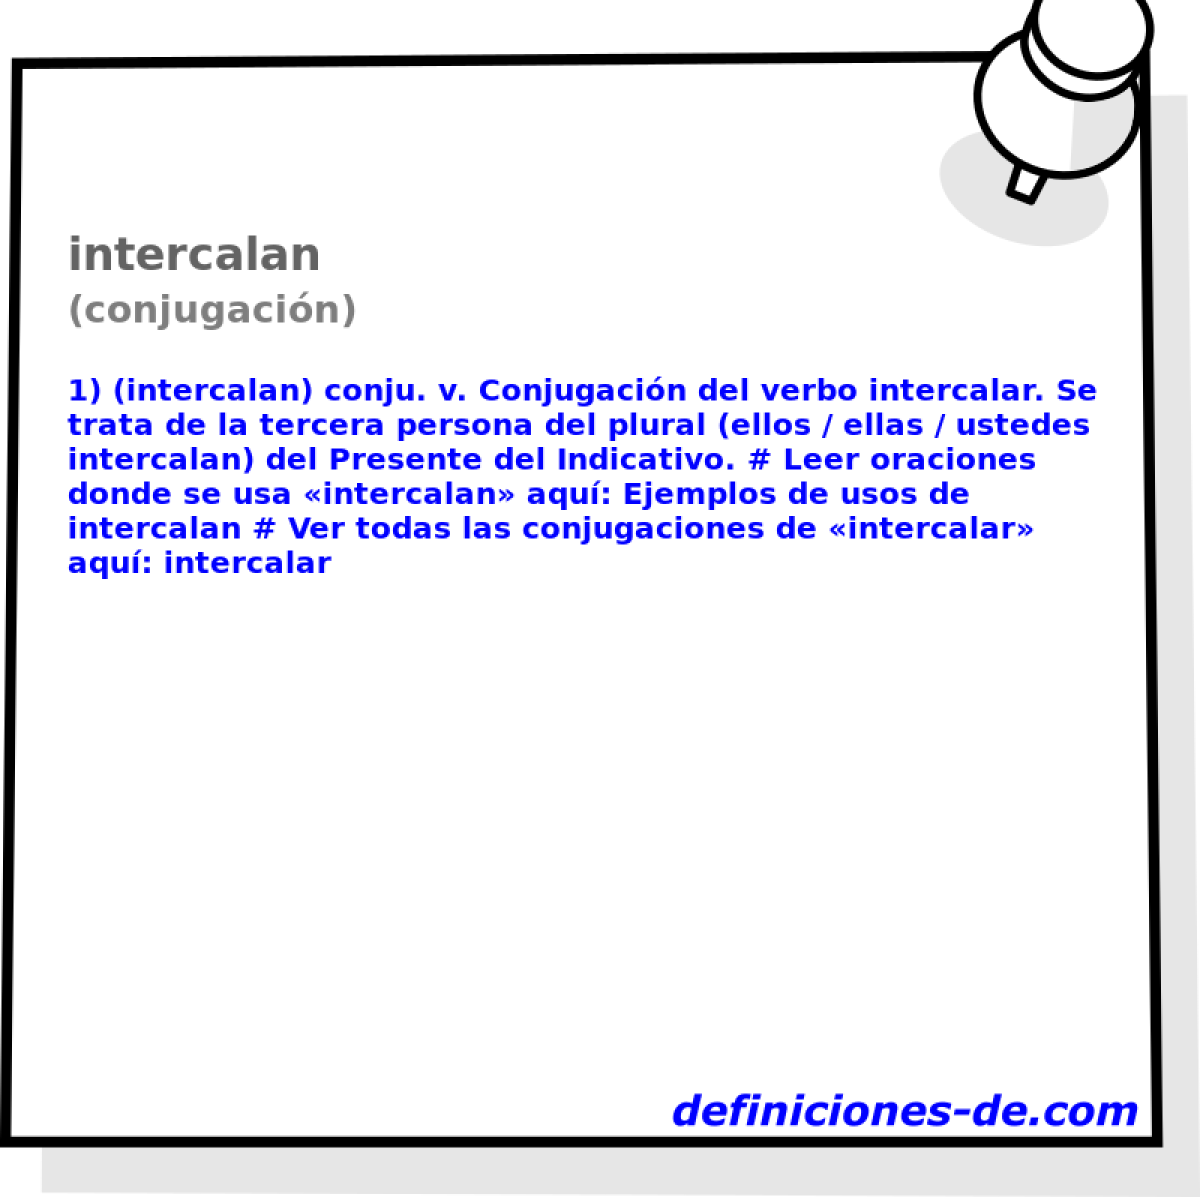 intercalan (conjugacin)